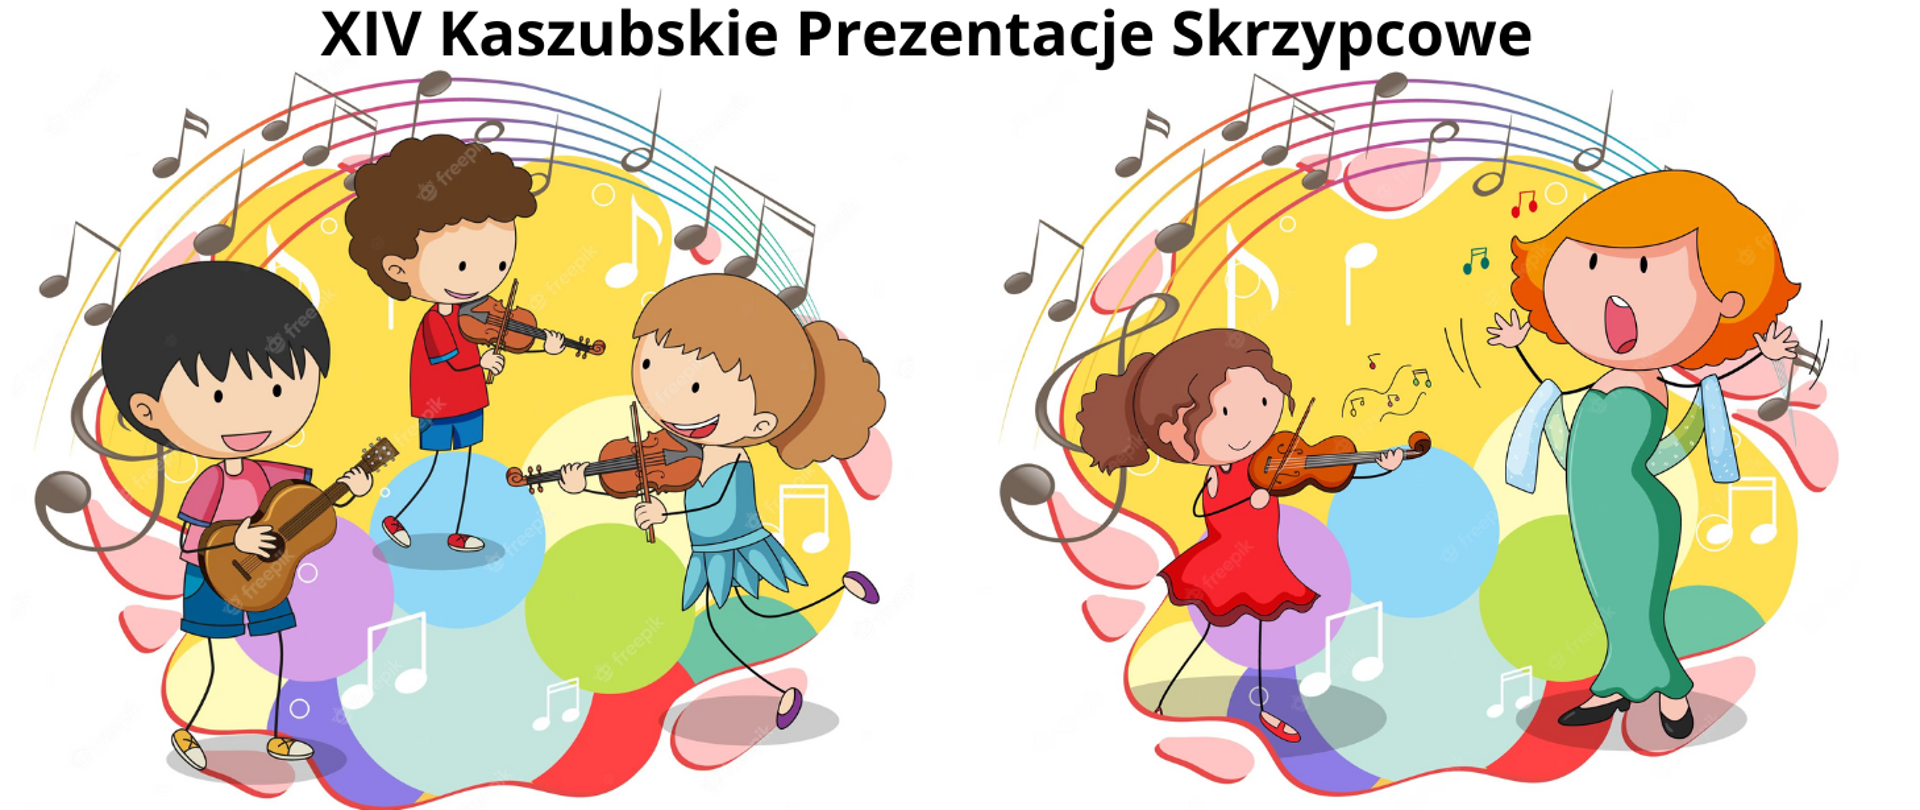 Na białym tle dwa obrazki z motywem skrzypcowym. Po lewej stronie Trio dzieci: dwóch chłopców i jedna dziewczynka. Dziewczyna i chłopiec grają na skrzypcach, a jeden chłopiec na gitarze. Nad dziećmi pięciolinia z nutami. Po prawej stronie dziewczynka w czerwonej sukience i brązowych włosach gra na skrzypcach, a obok stoi dziewczyna w zielonej długiej sukience i pomarańczowych włosach, która śpiewa. Na nimi pięciolinia z nutami.